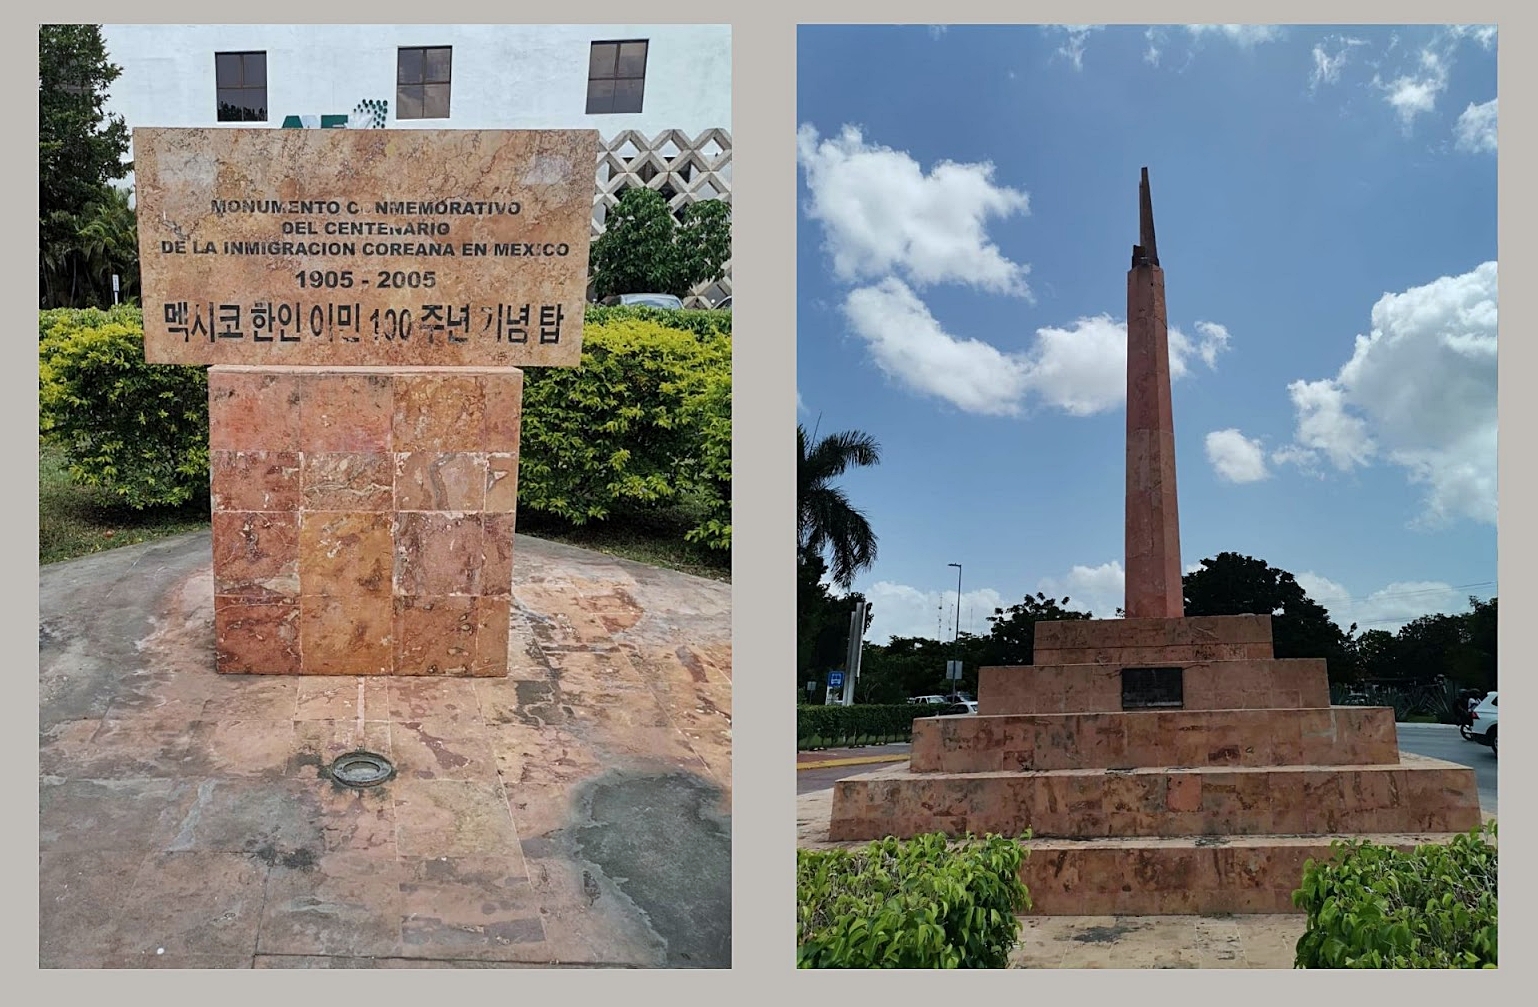 Monumento conmemorativo del centenario de la inmigración coreana en México